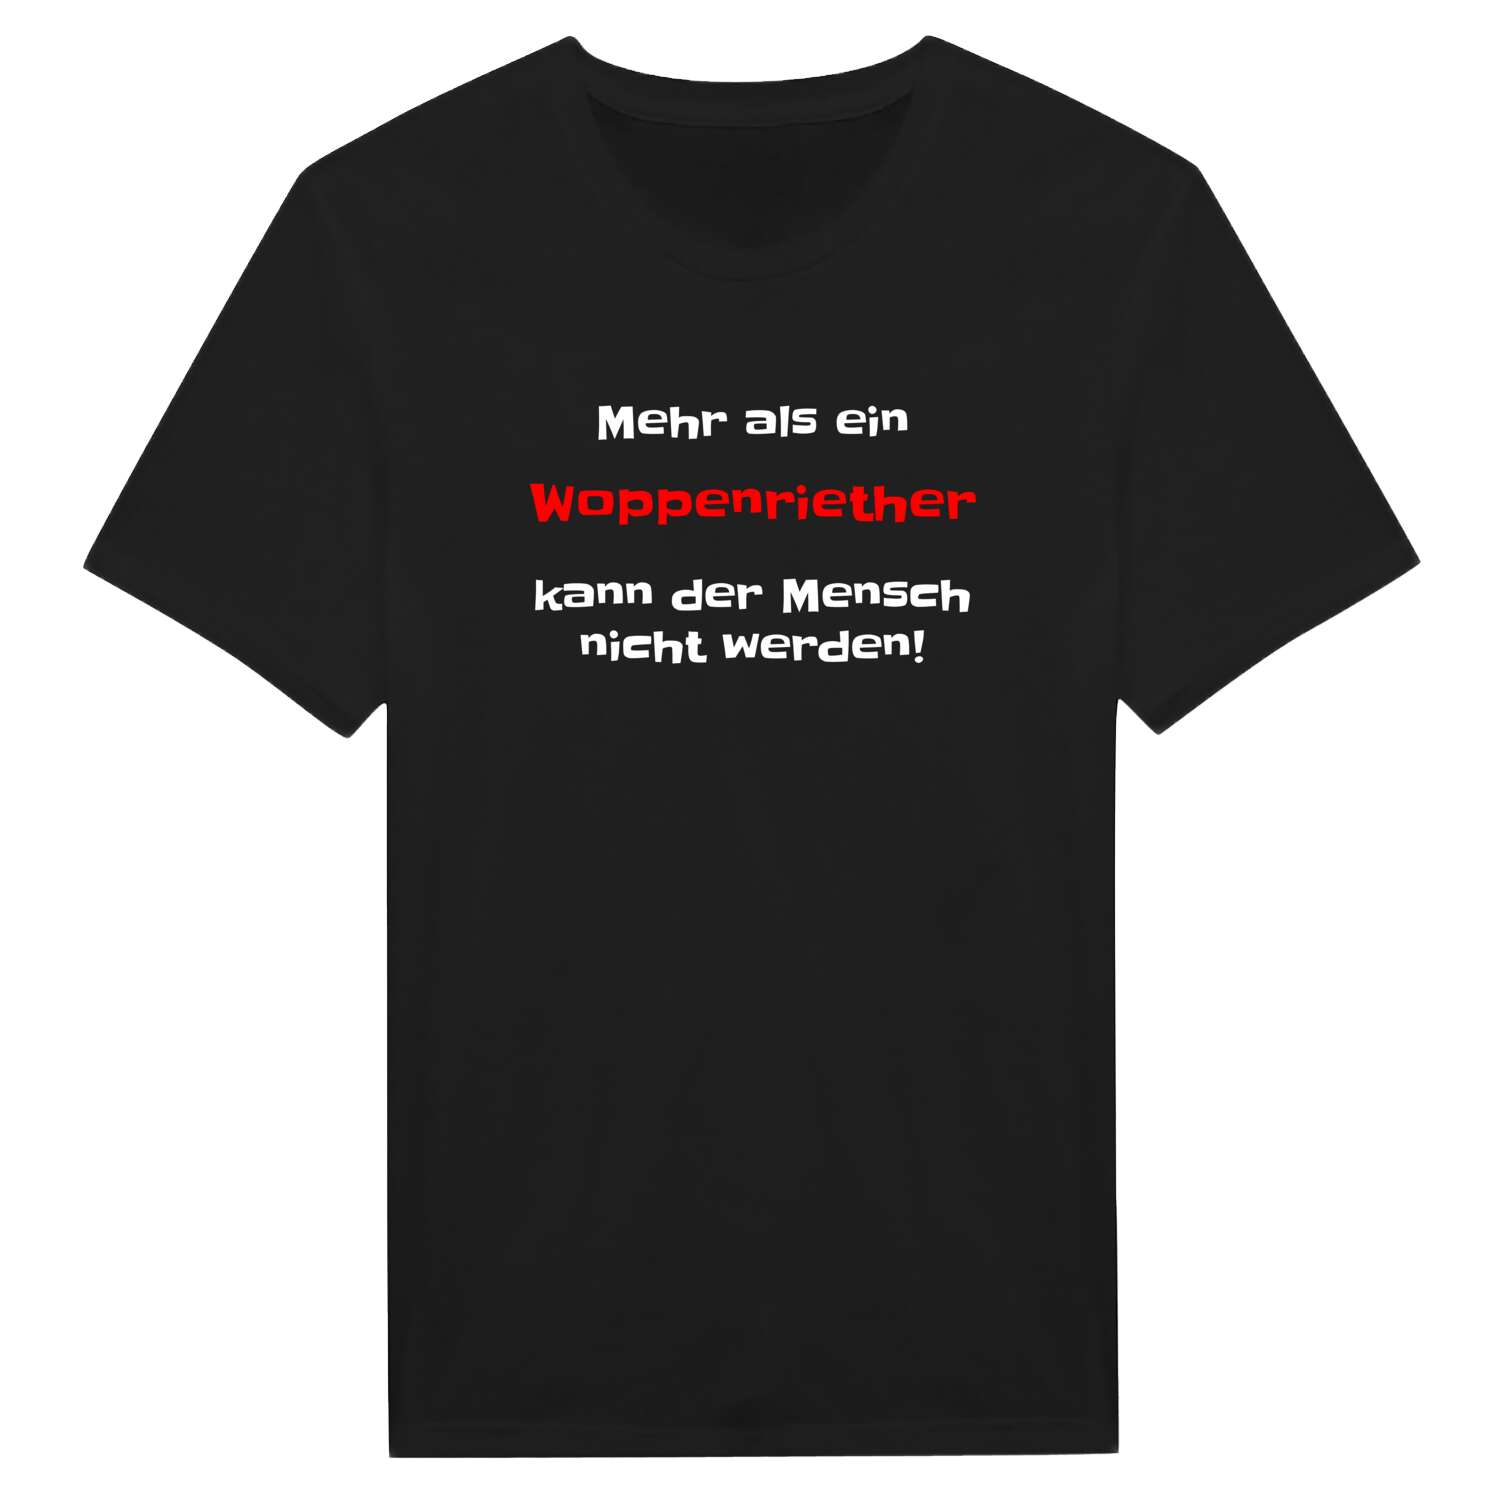 Woppenrieth T-Shirt »Mehr als ein«